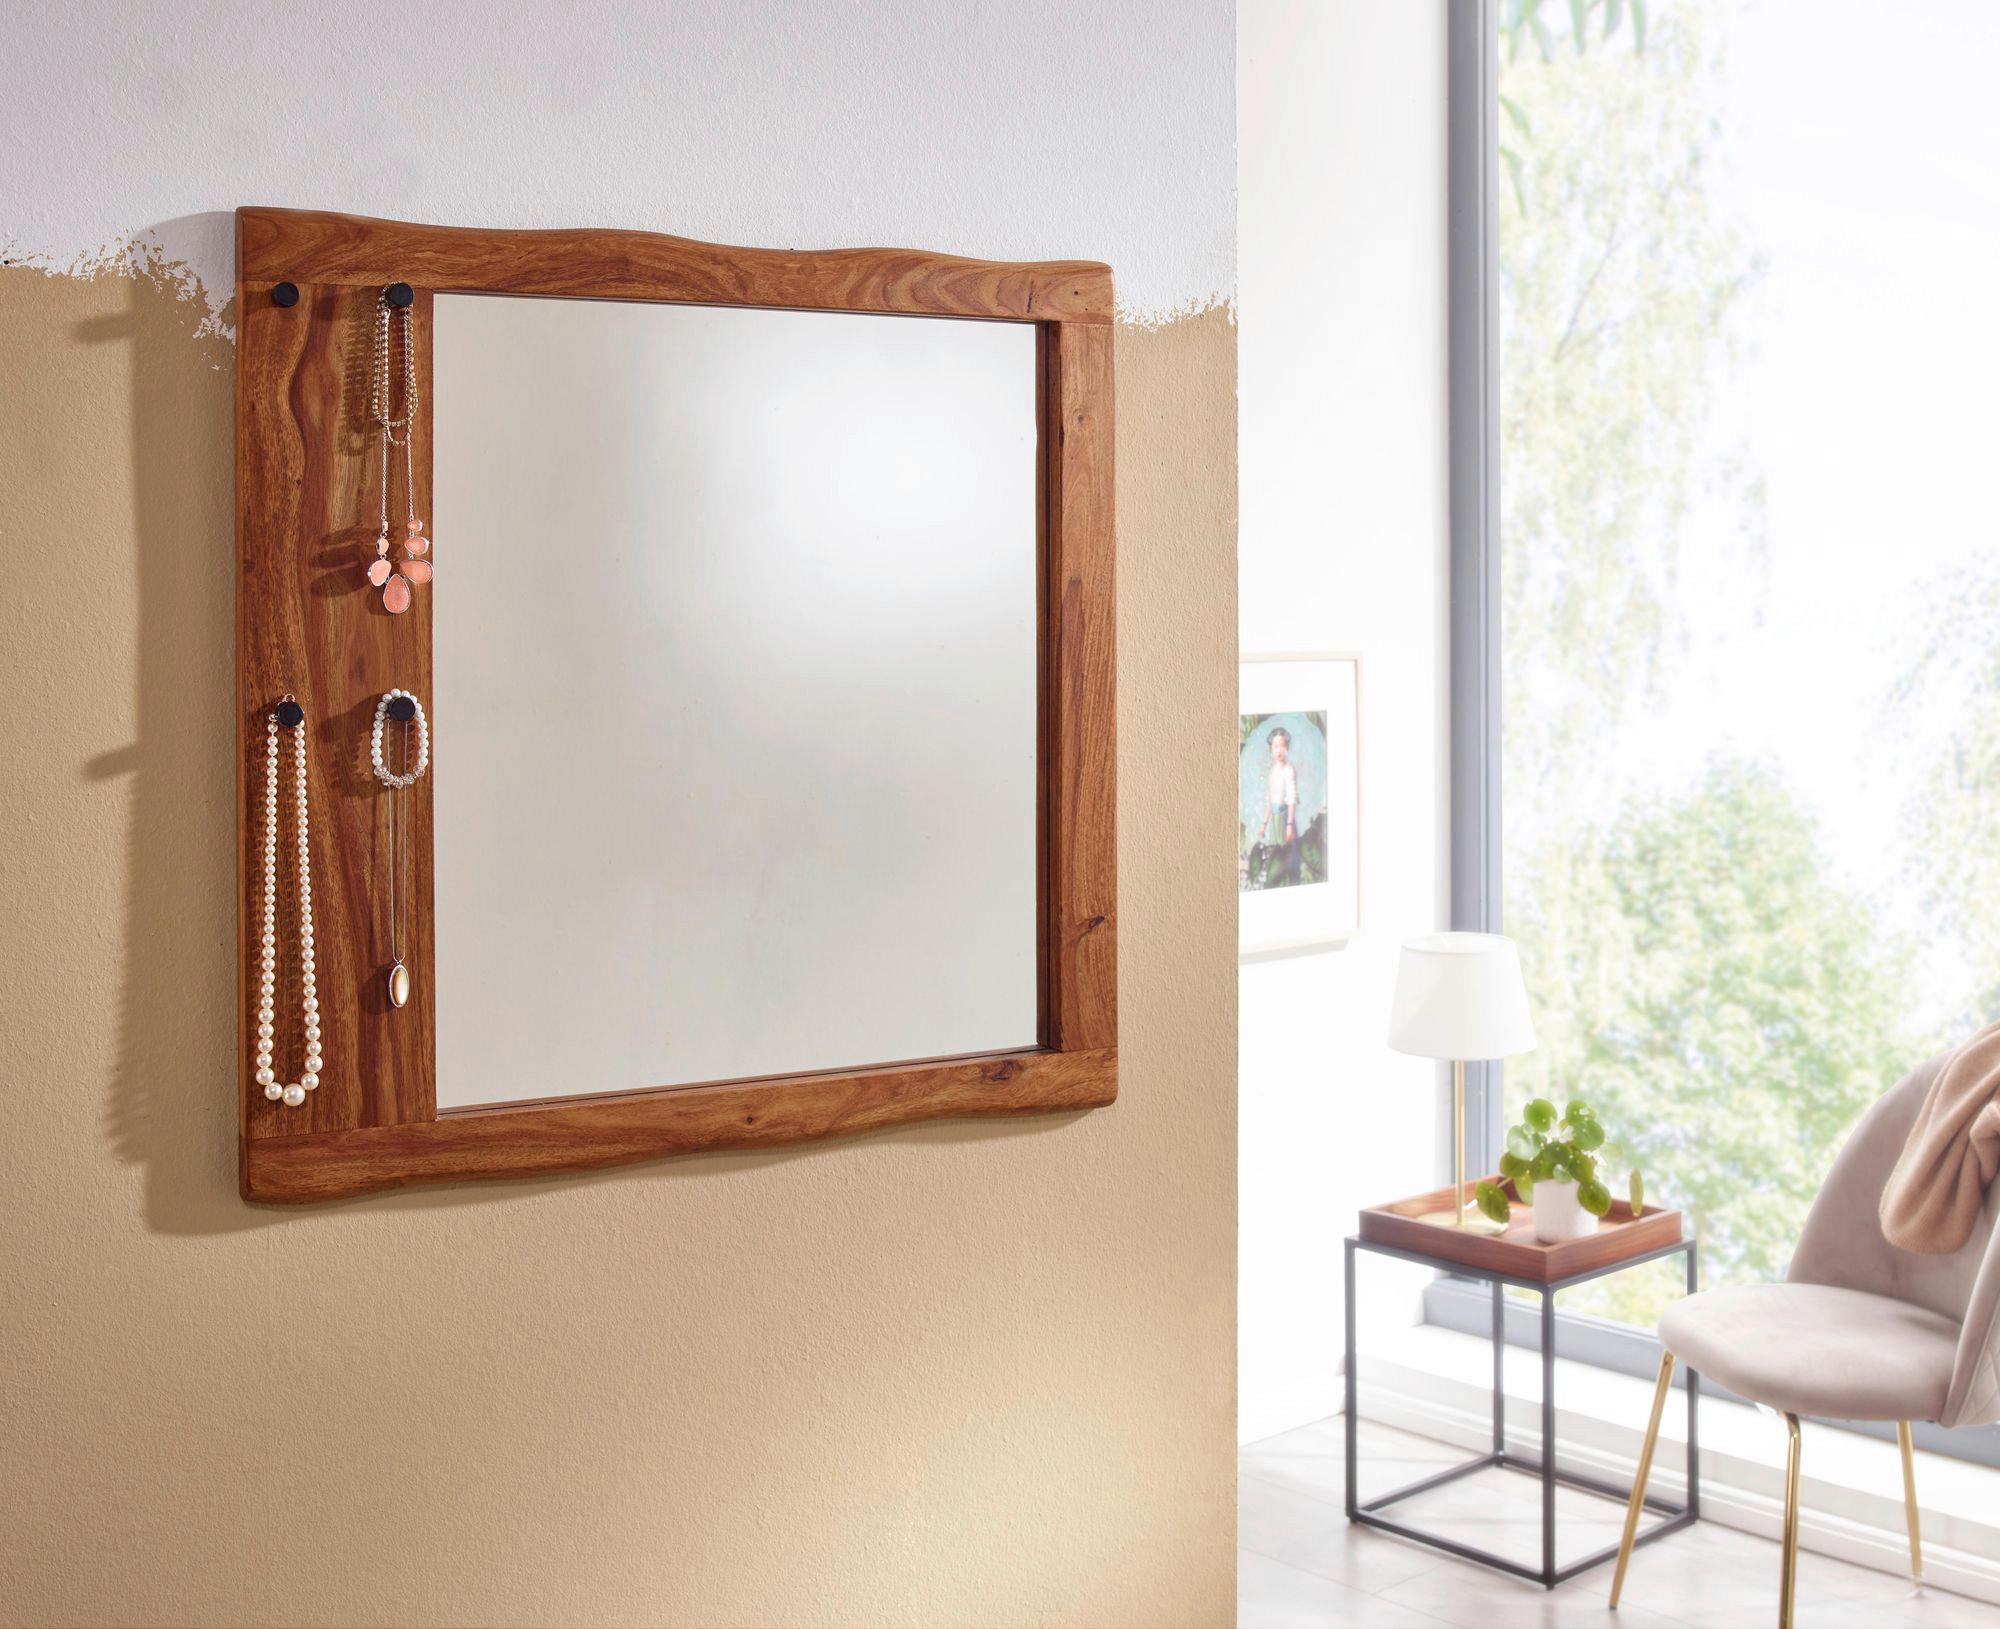 Zrcadlo V Masivním Dřevěnem Rámě Š: 80 Cm - barvy sheesham, Moderní, dřevo/sklo (80/80/3cm) - MID.YOU